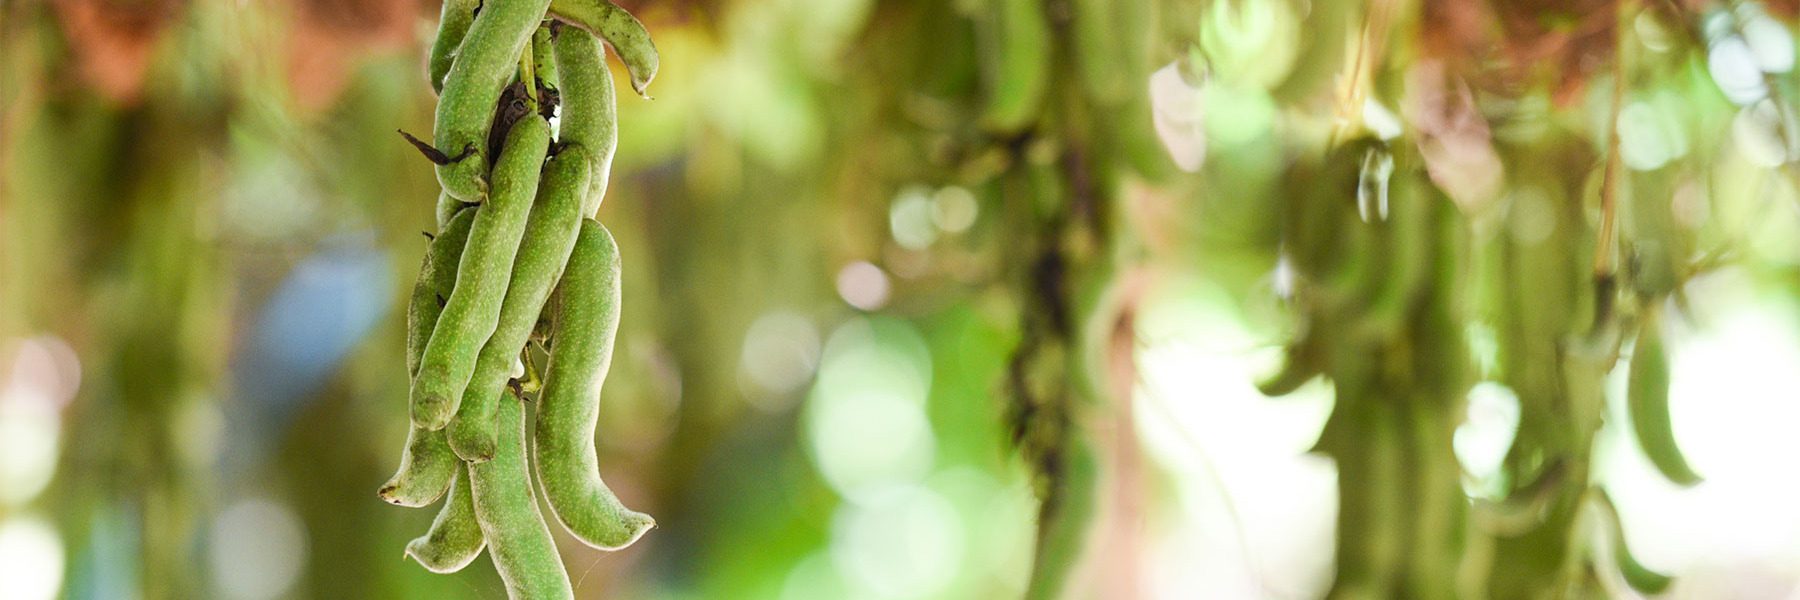 Mucuna Pruriens Benefits & Uses - Ayurvedic Herb Guides | Banyan Botanicals